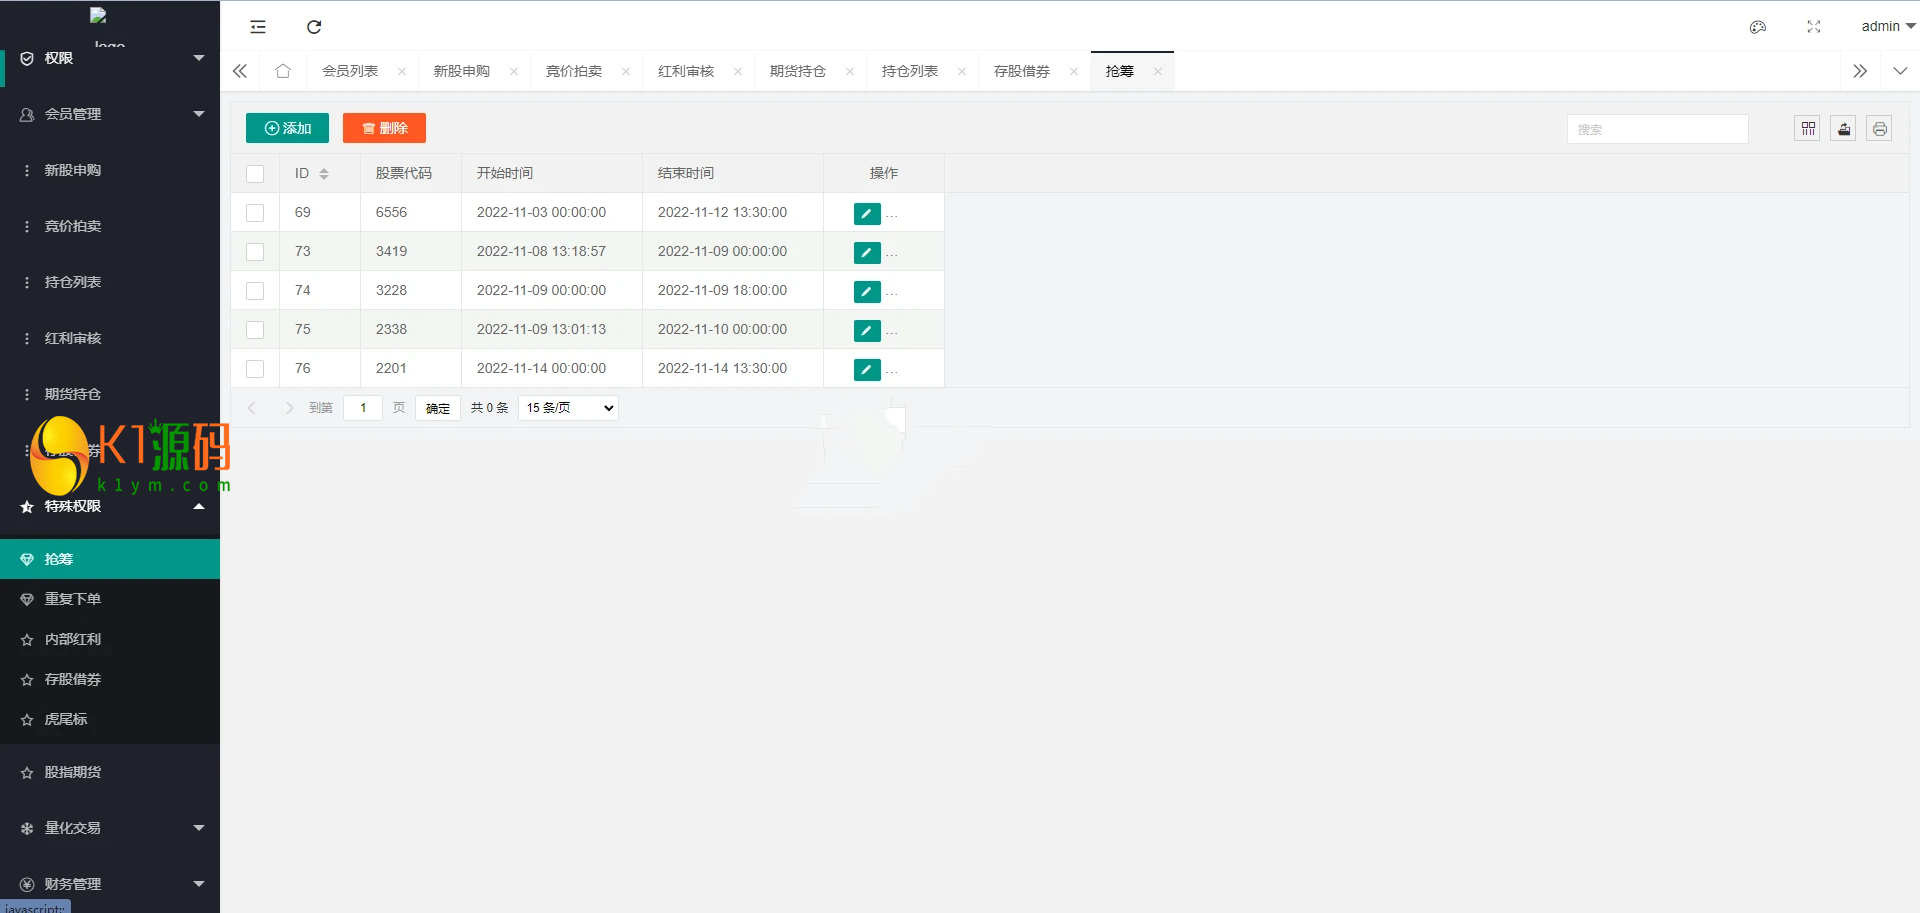 新版台湾股票系统/股票配资源码/申购折扣交易系统插图5